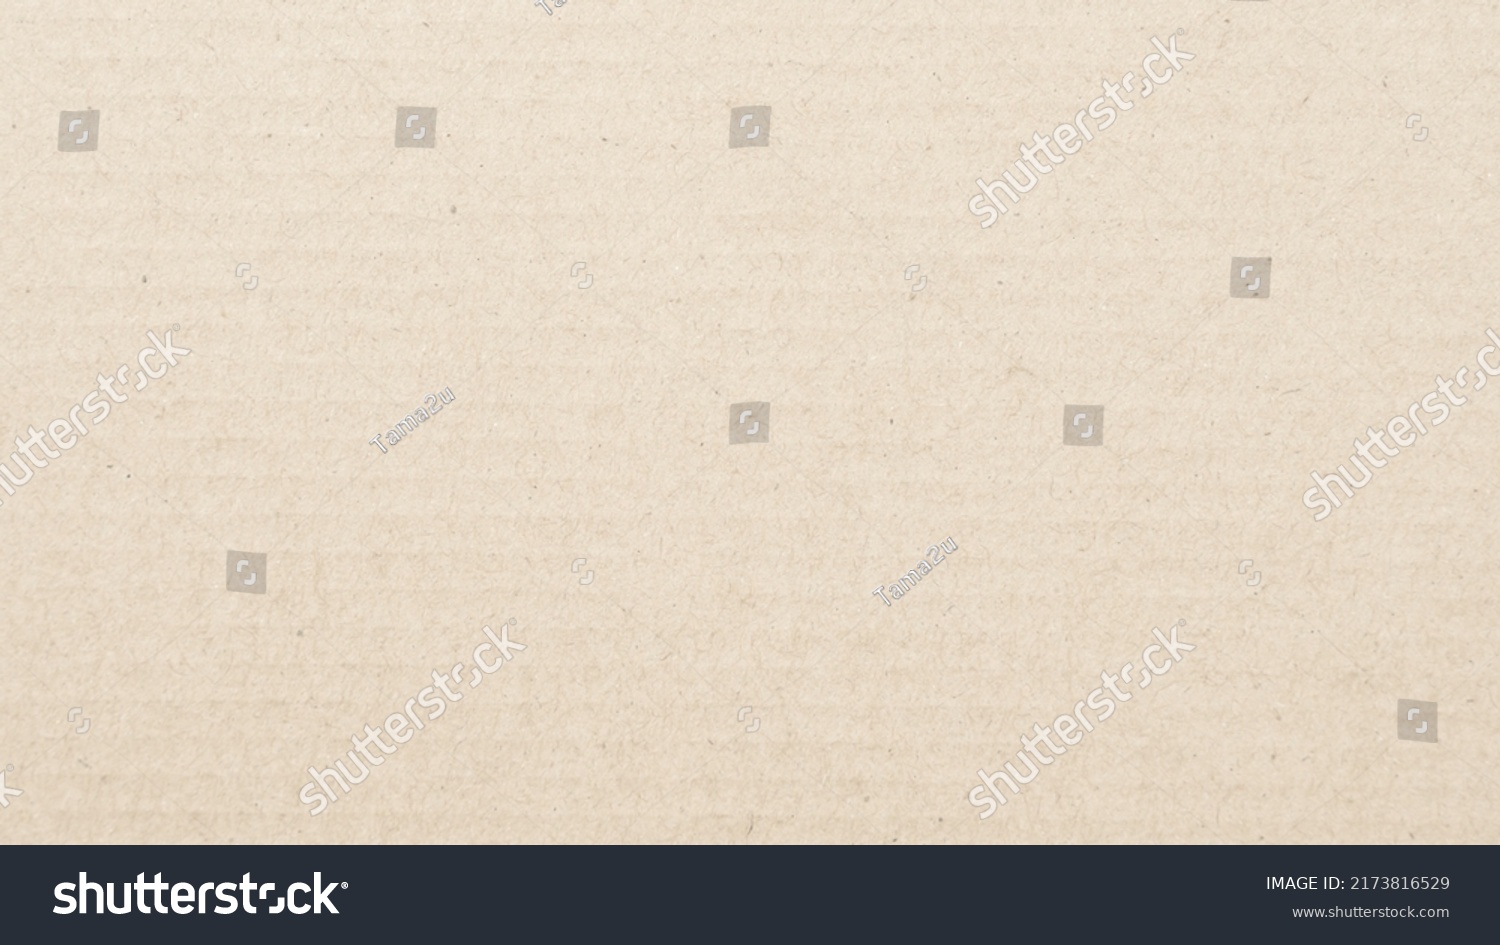 抽象的な茶色の再生紙テクスチャ背景 古いクラフト紙の箱型クラフト柄 平面図 写真素材 Shutterstock